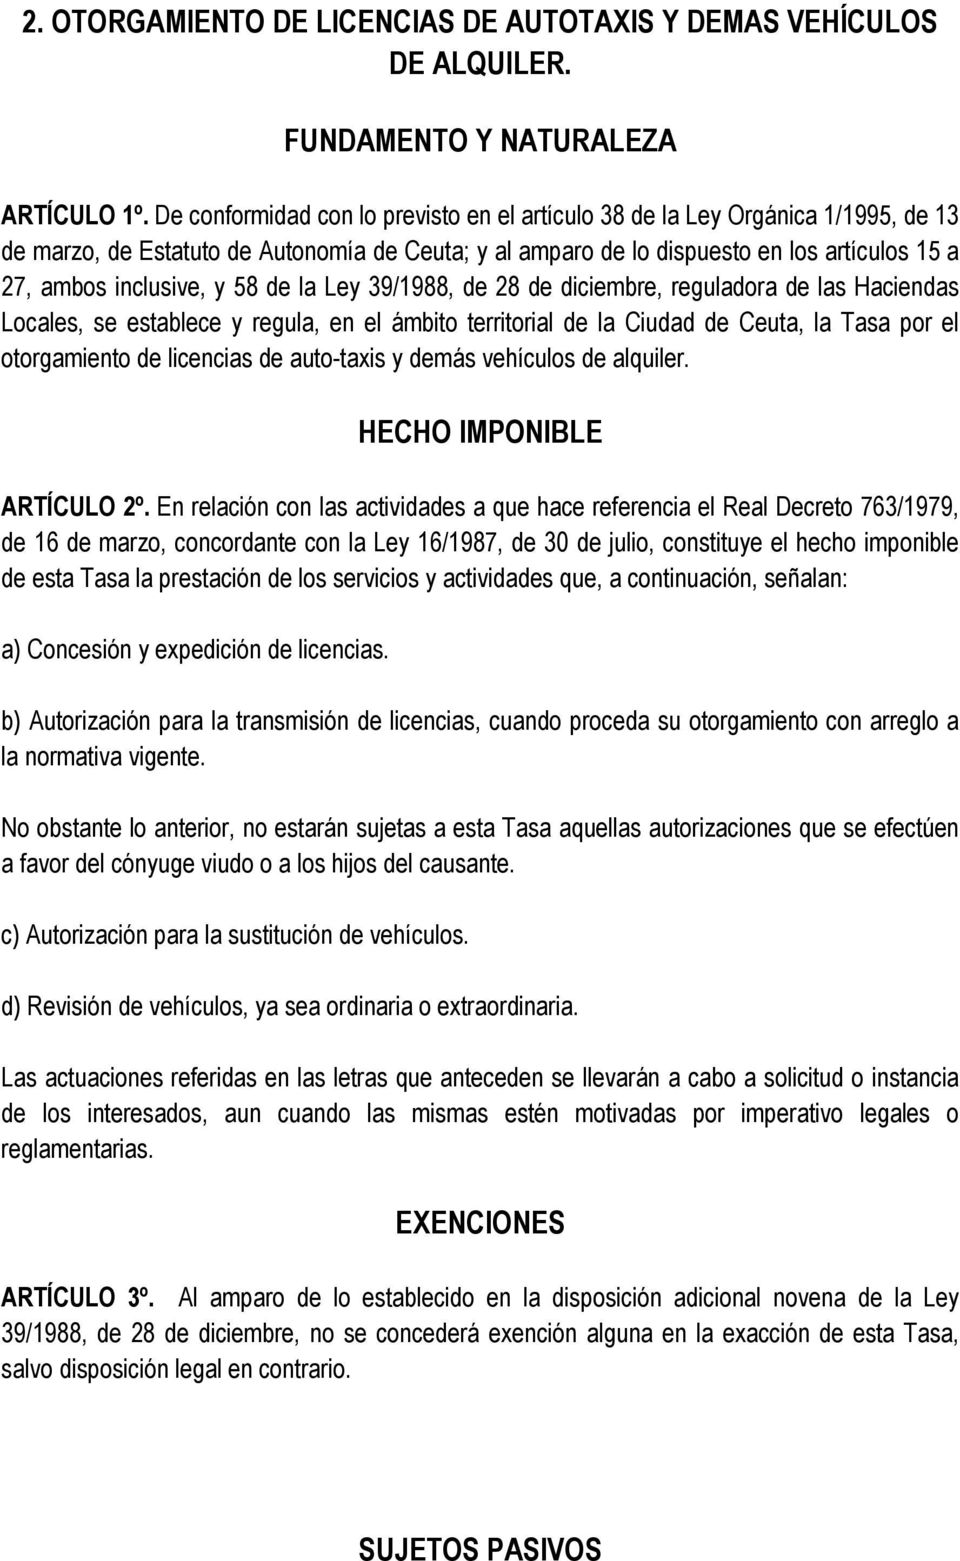 58 de la Ley 39/1988, de 28 de diciembre, reguladora de las Haciendas Locales, se establece y regula, en el ámbito territorial de la Ciudad de Ceuta, la Tasa por el otorgamiento de licencias de